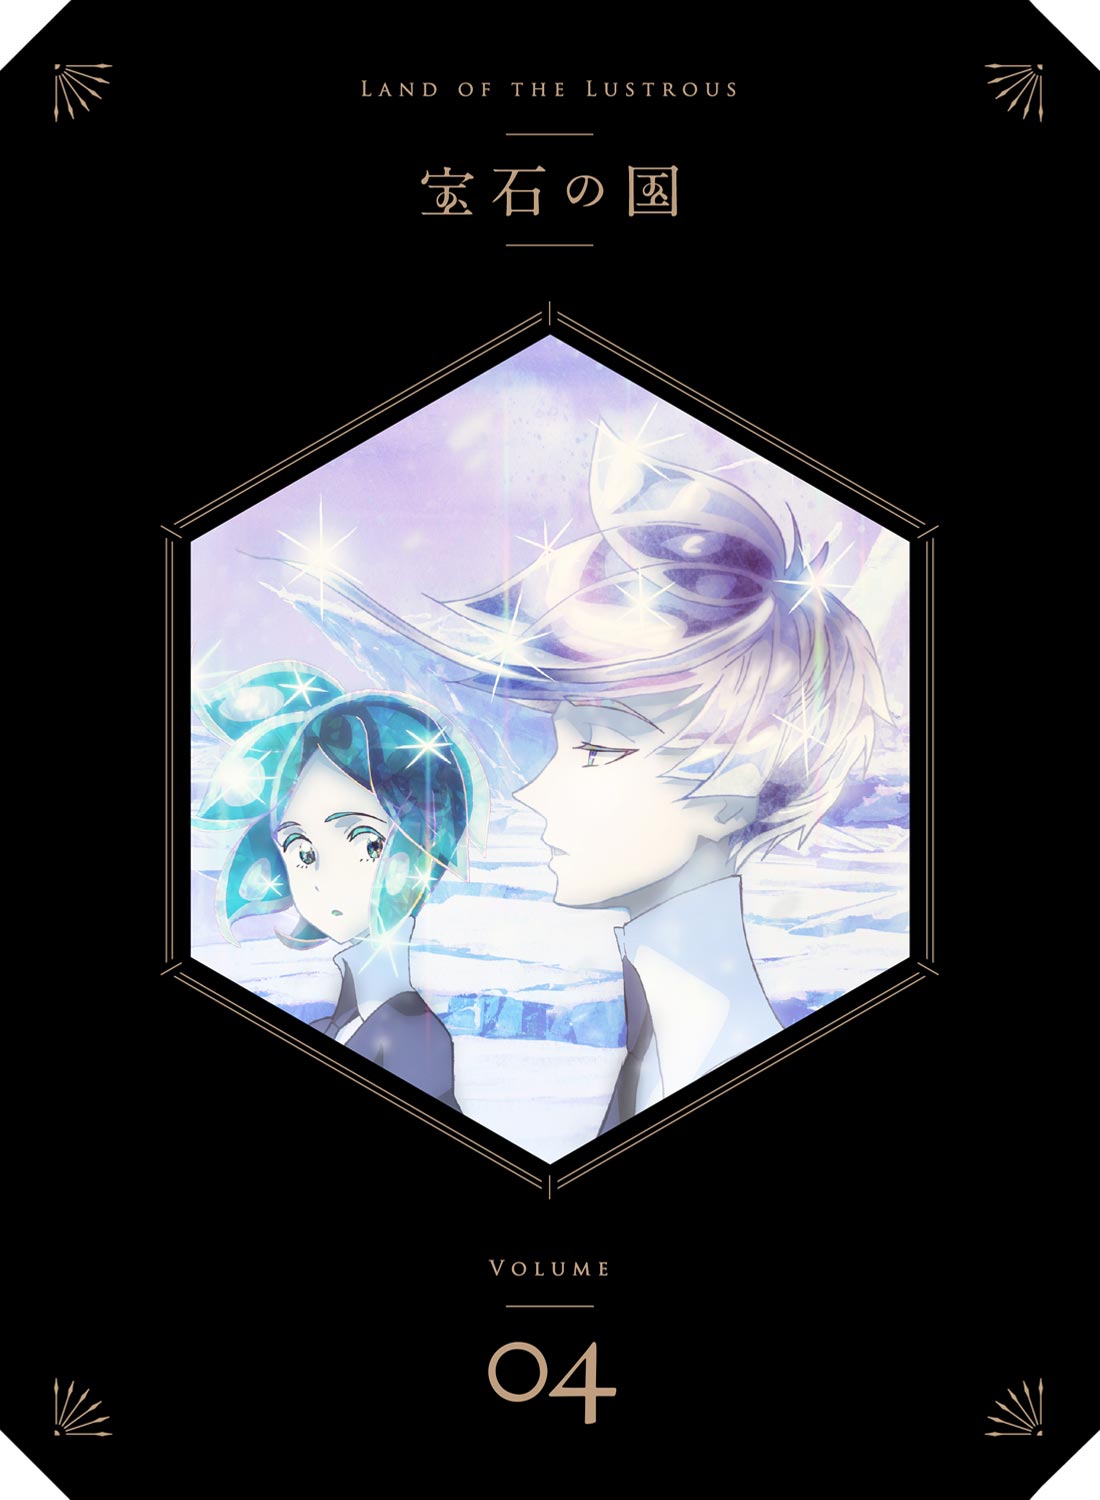 宝石の国 Vol.4 DVD 初回生産限定版